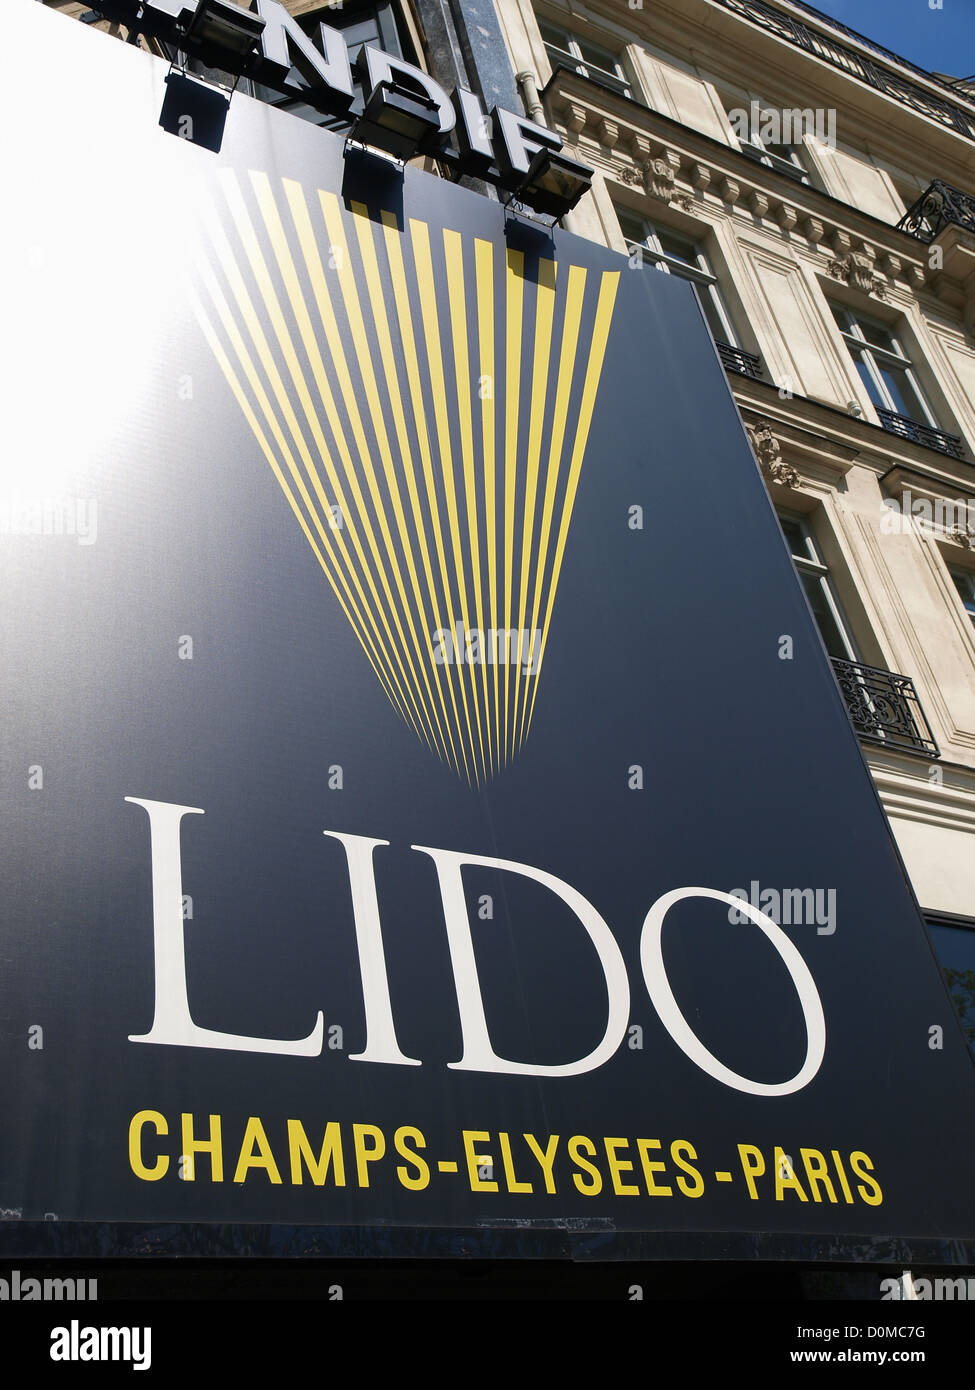 Paris, Champs Elysees, Lido, France Stock Photo